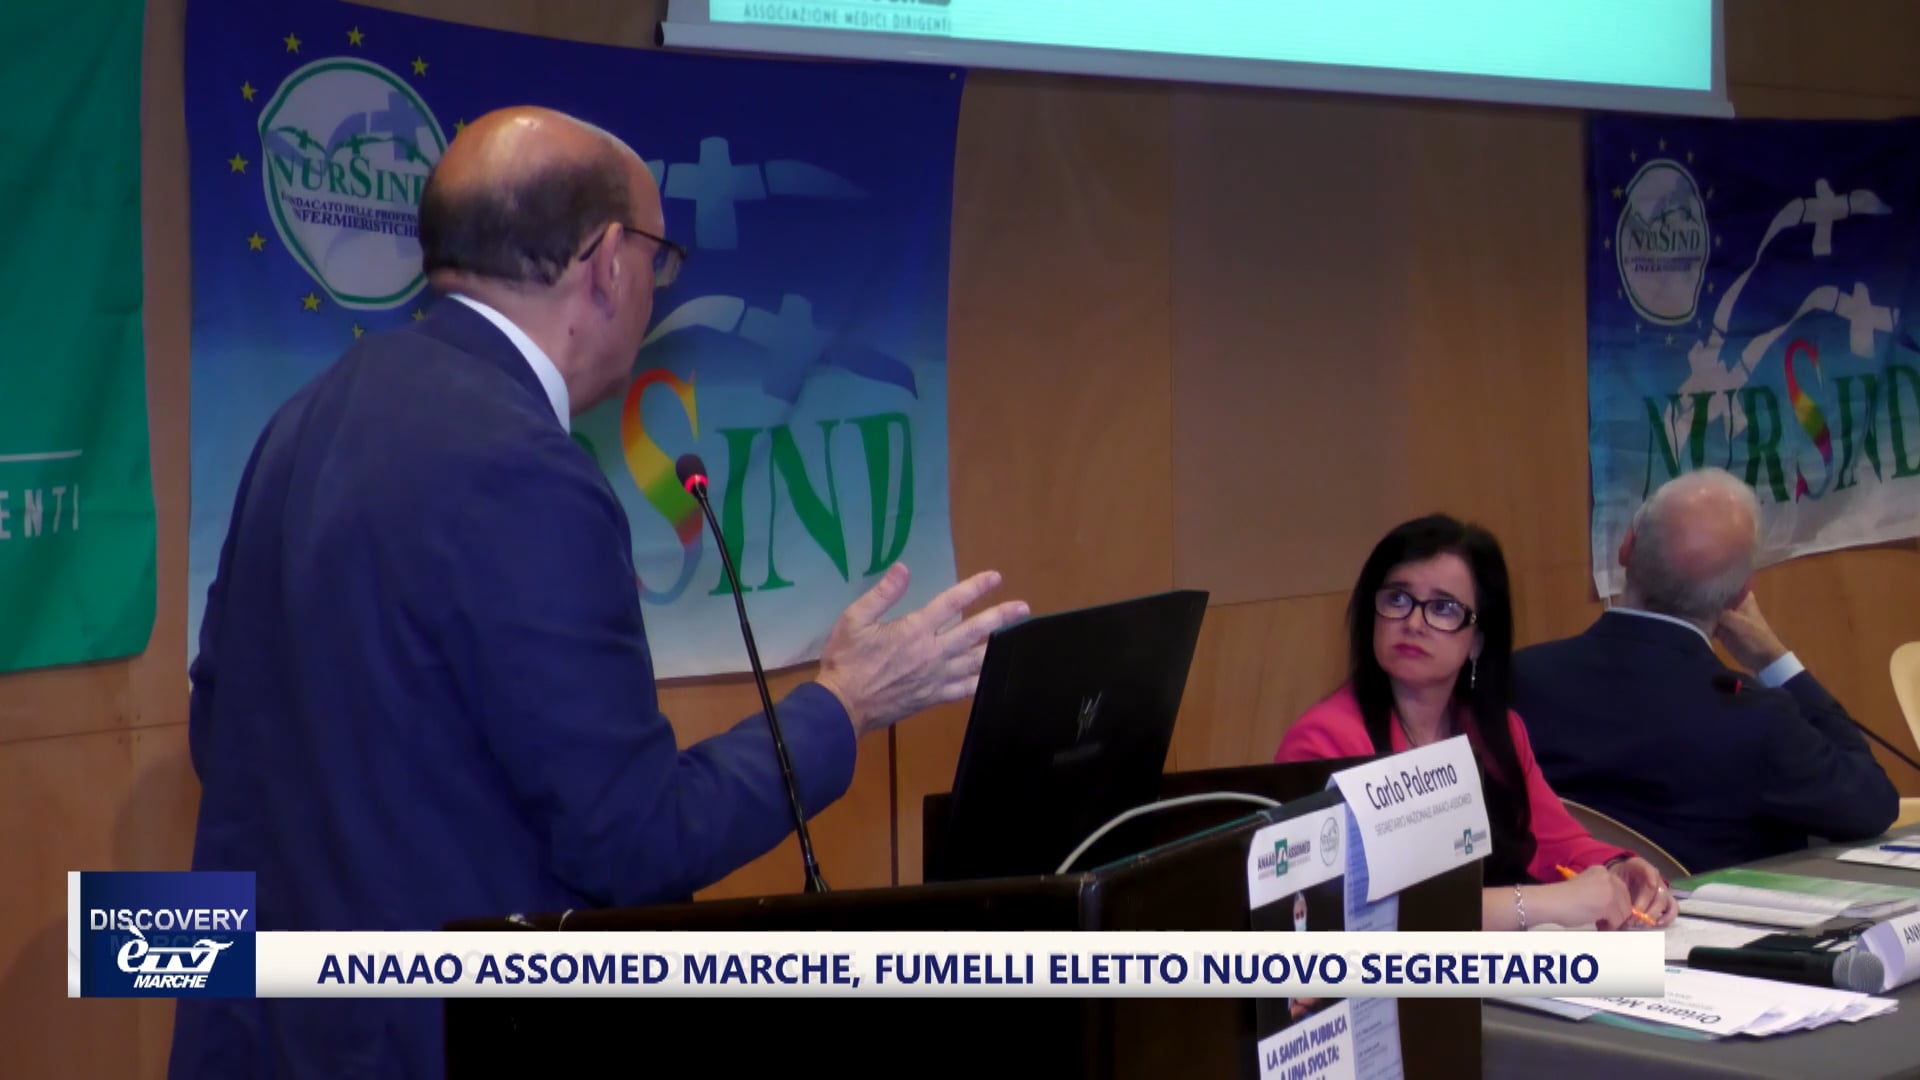 Anaao Assomed Marche, Fumelli eletto nuovo segretario - VIDEO